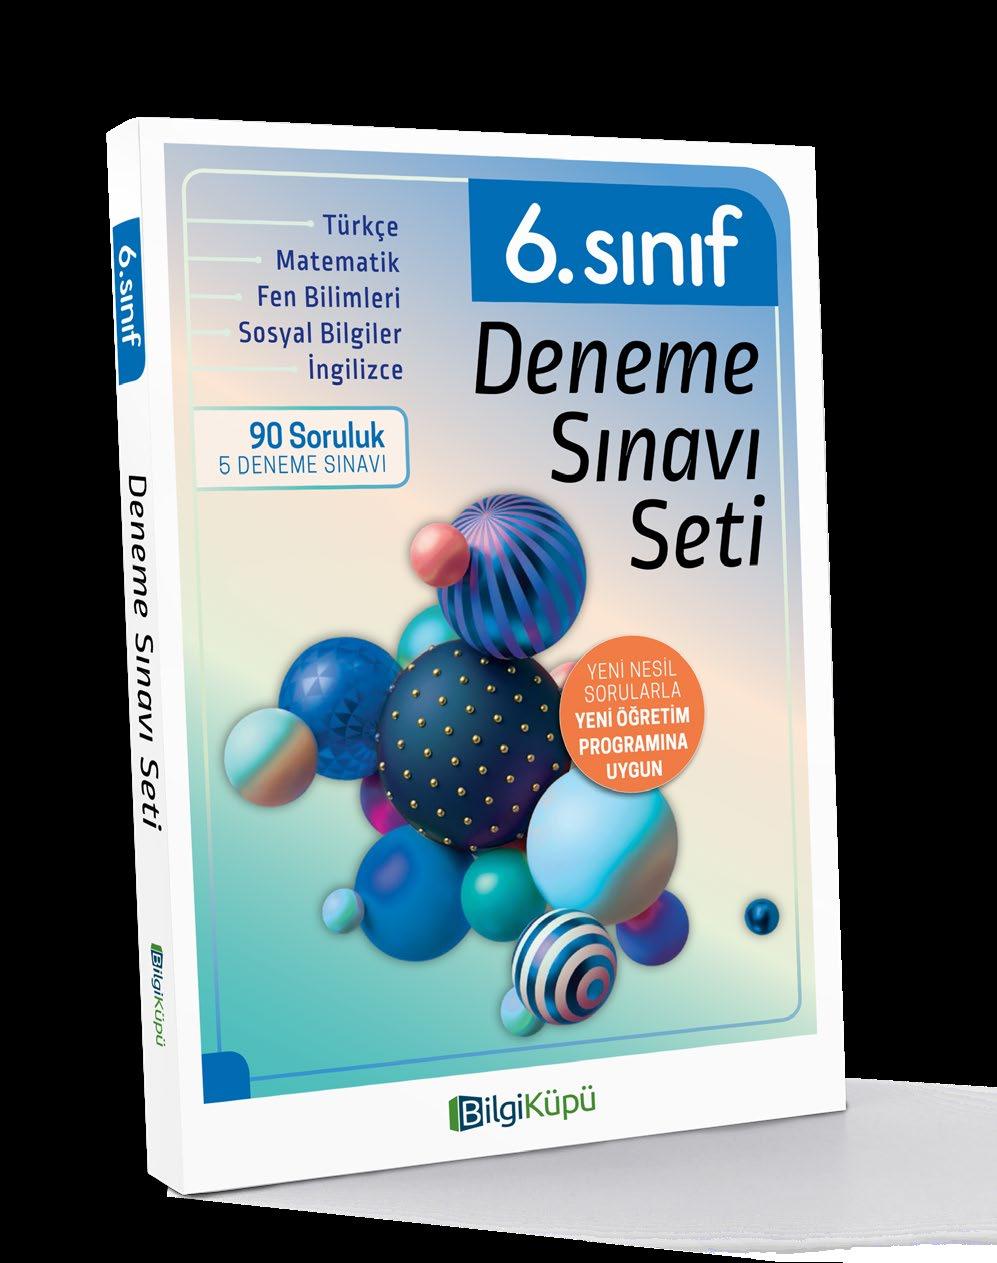 SINIF DENEME SINAVI SETI 156 sayfa, 195 x 275 mm 6.